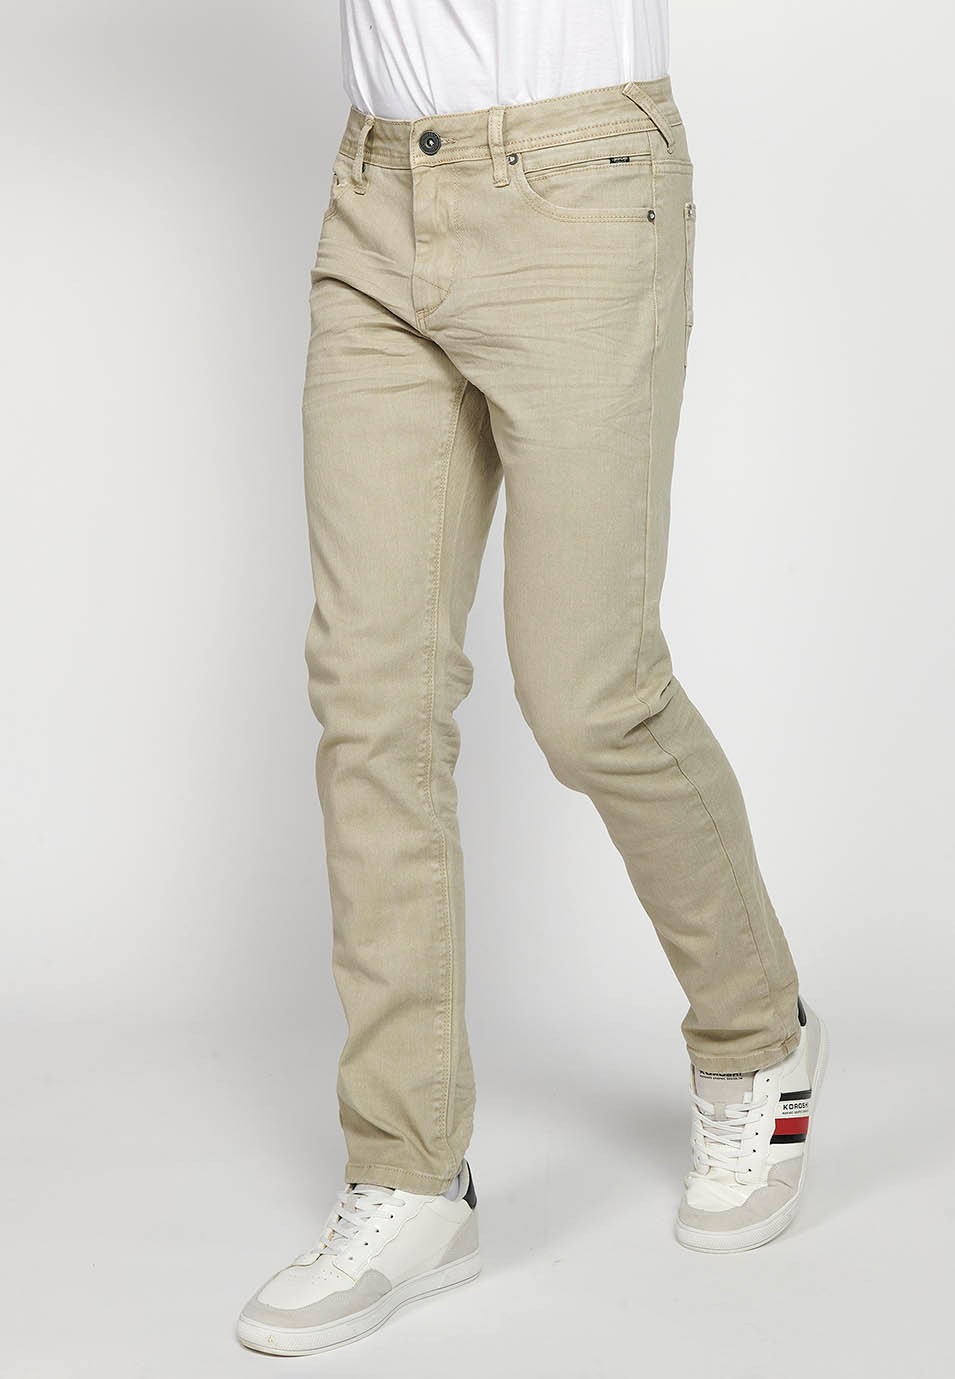 Pantalon long droit coupe classique avec fermeture sur le devant avec fermeture éclair et bouton avec cinq poches, une poche en couleur pierre pour homme 4